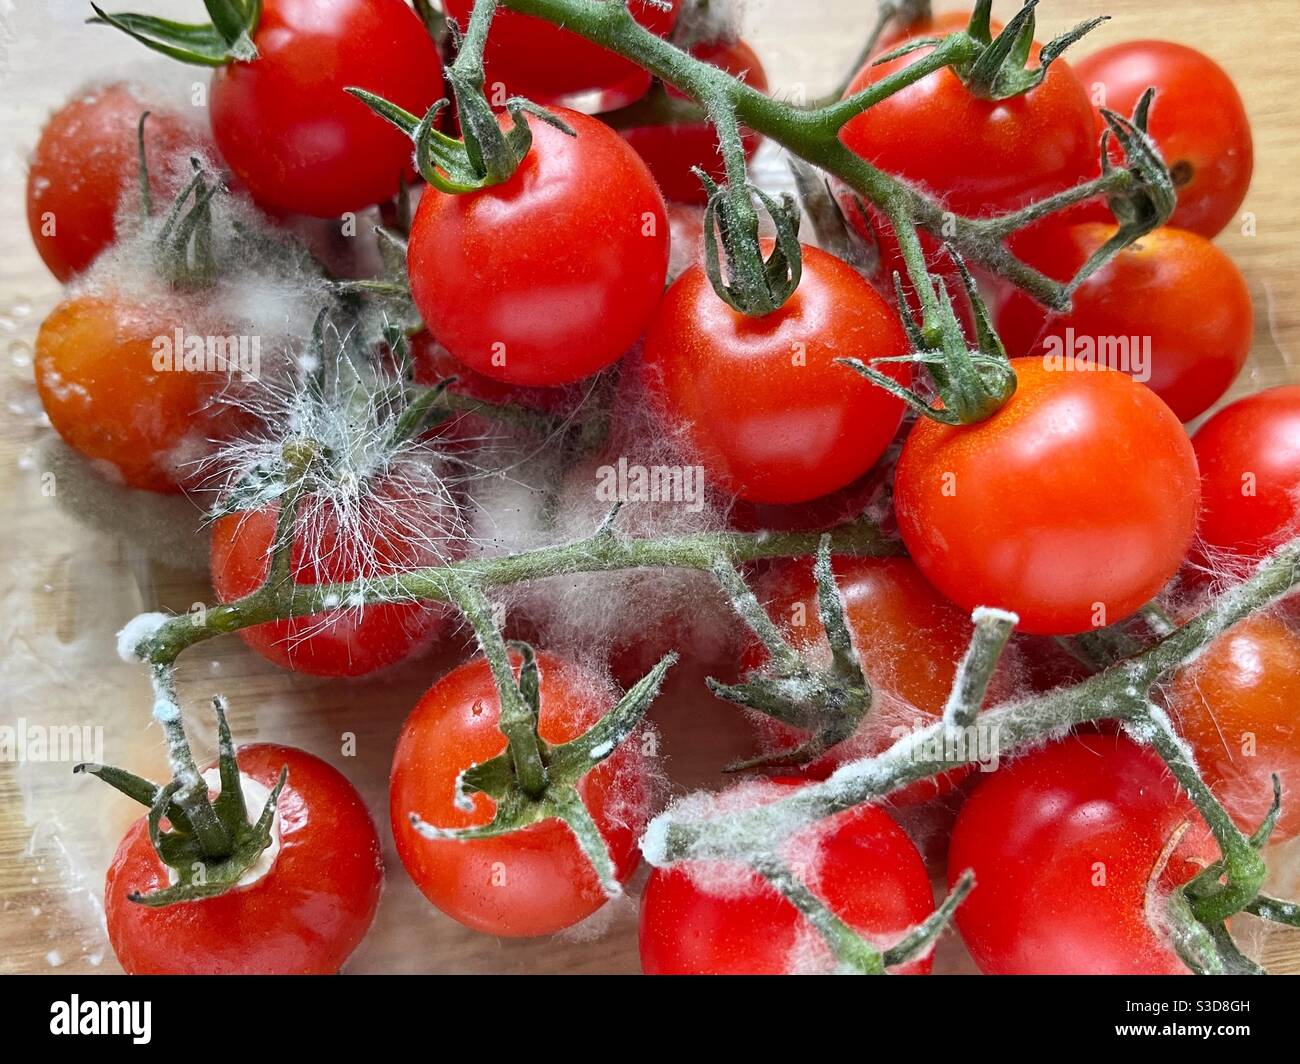 Tomates cerises recouvertes de moisissure Banque D'Images